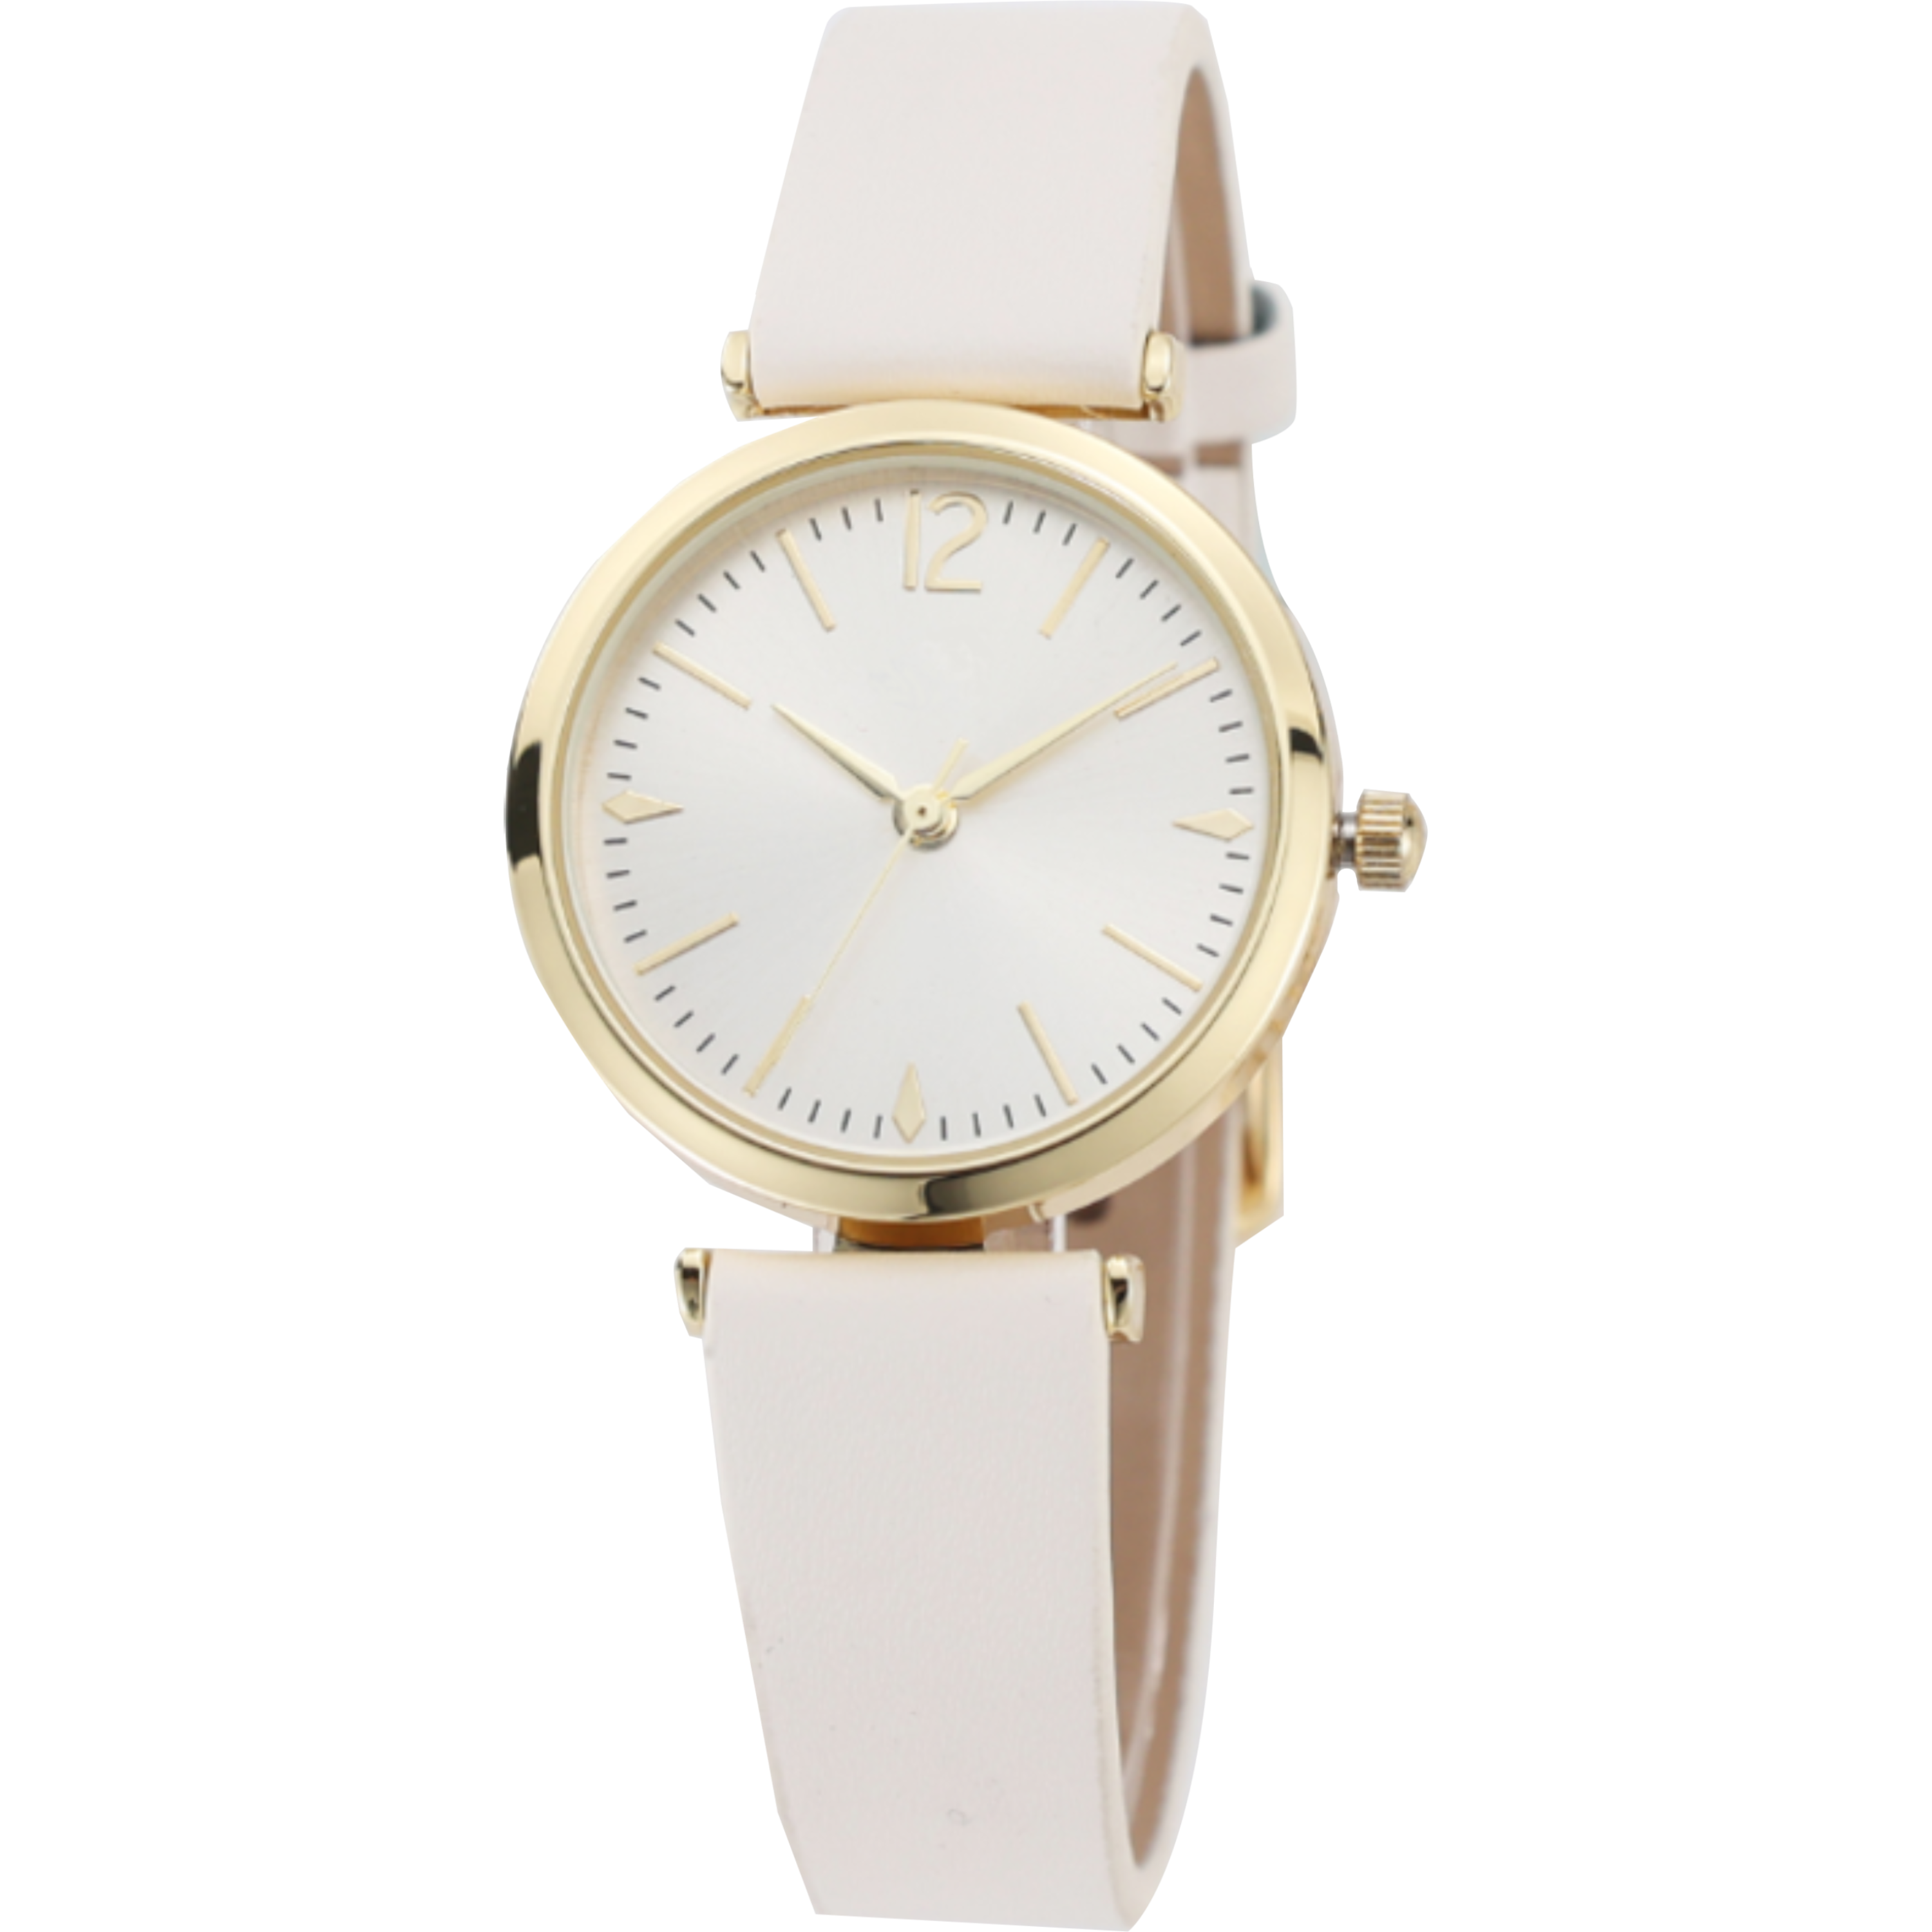 שעון יד לאישה עם צמיד COMTEX SY14 30mm - צבע זהב ורוד אחריות לשנה ע